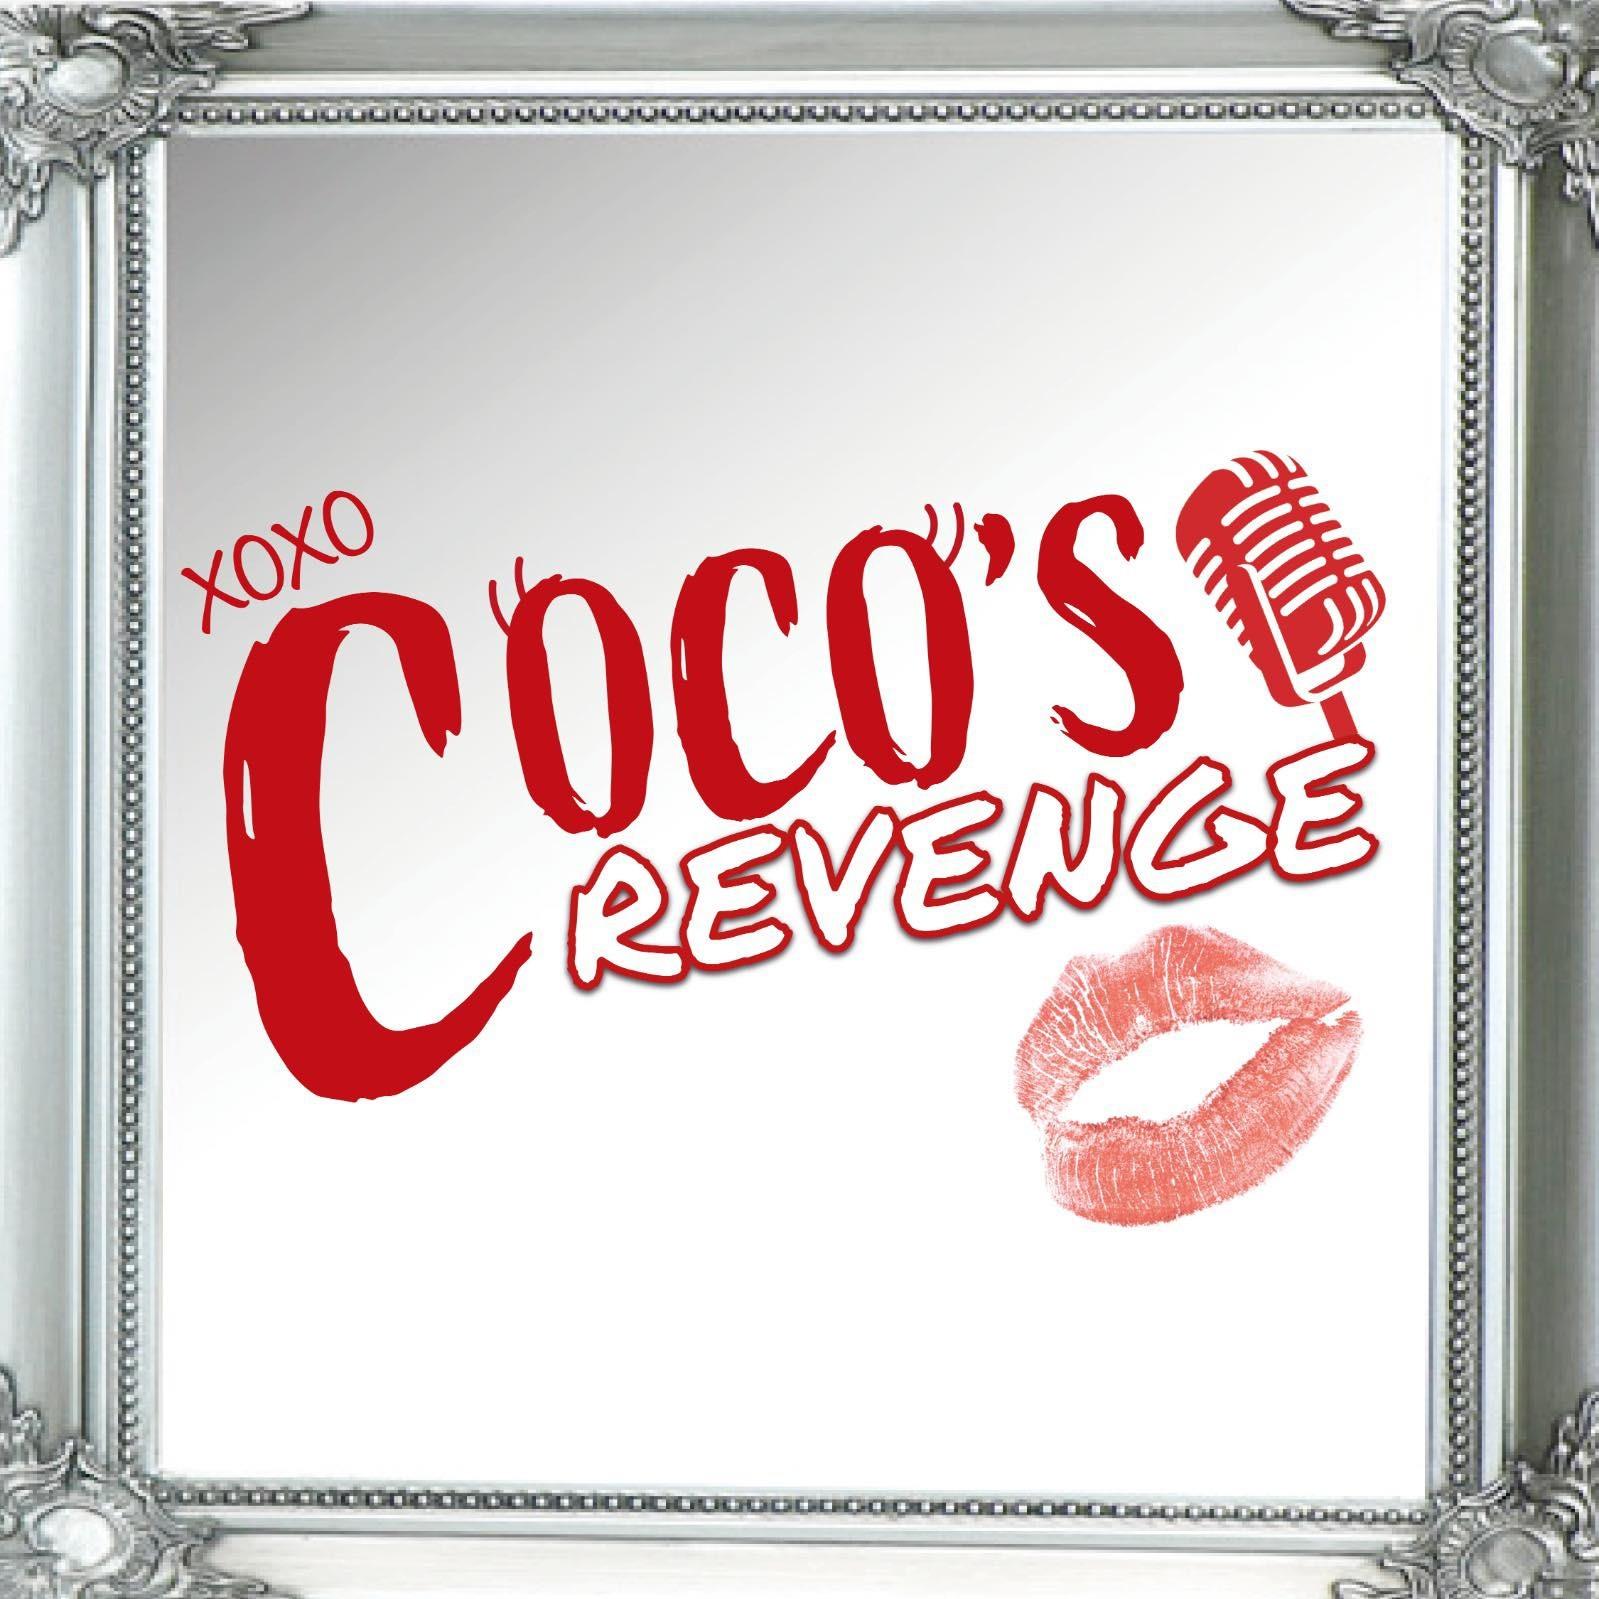 Coco's Revenge